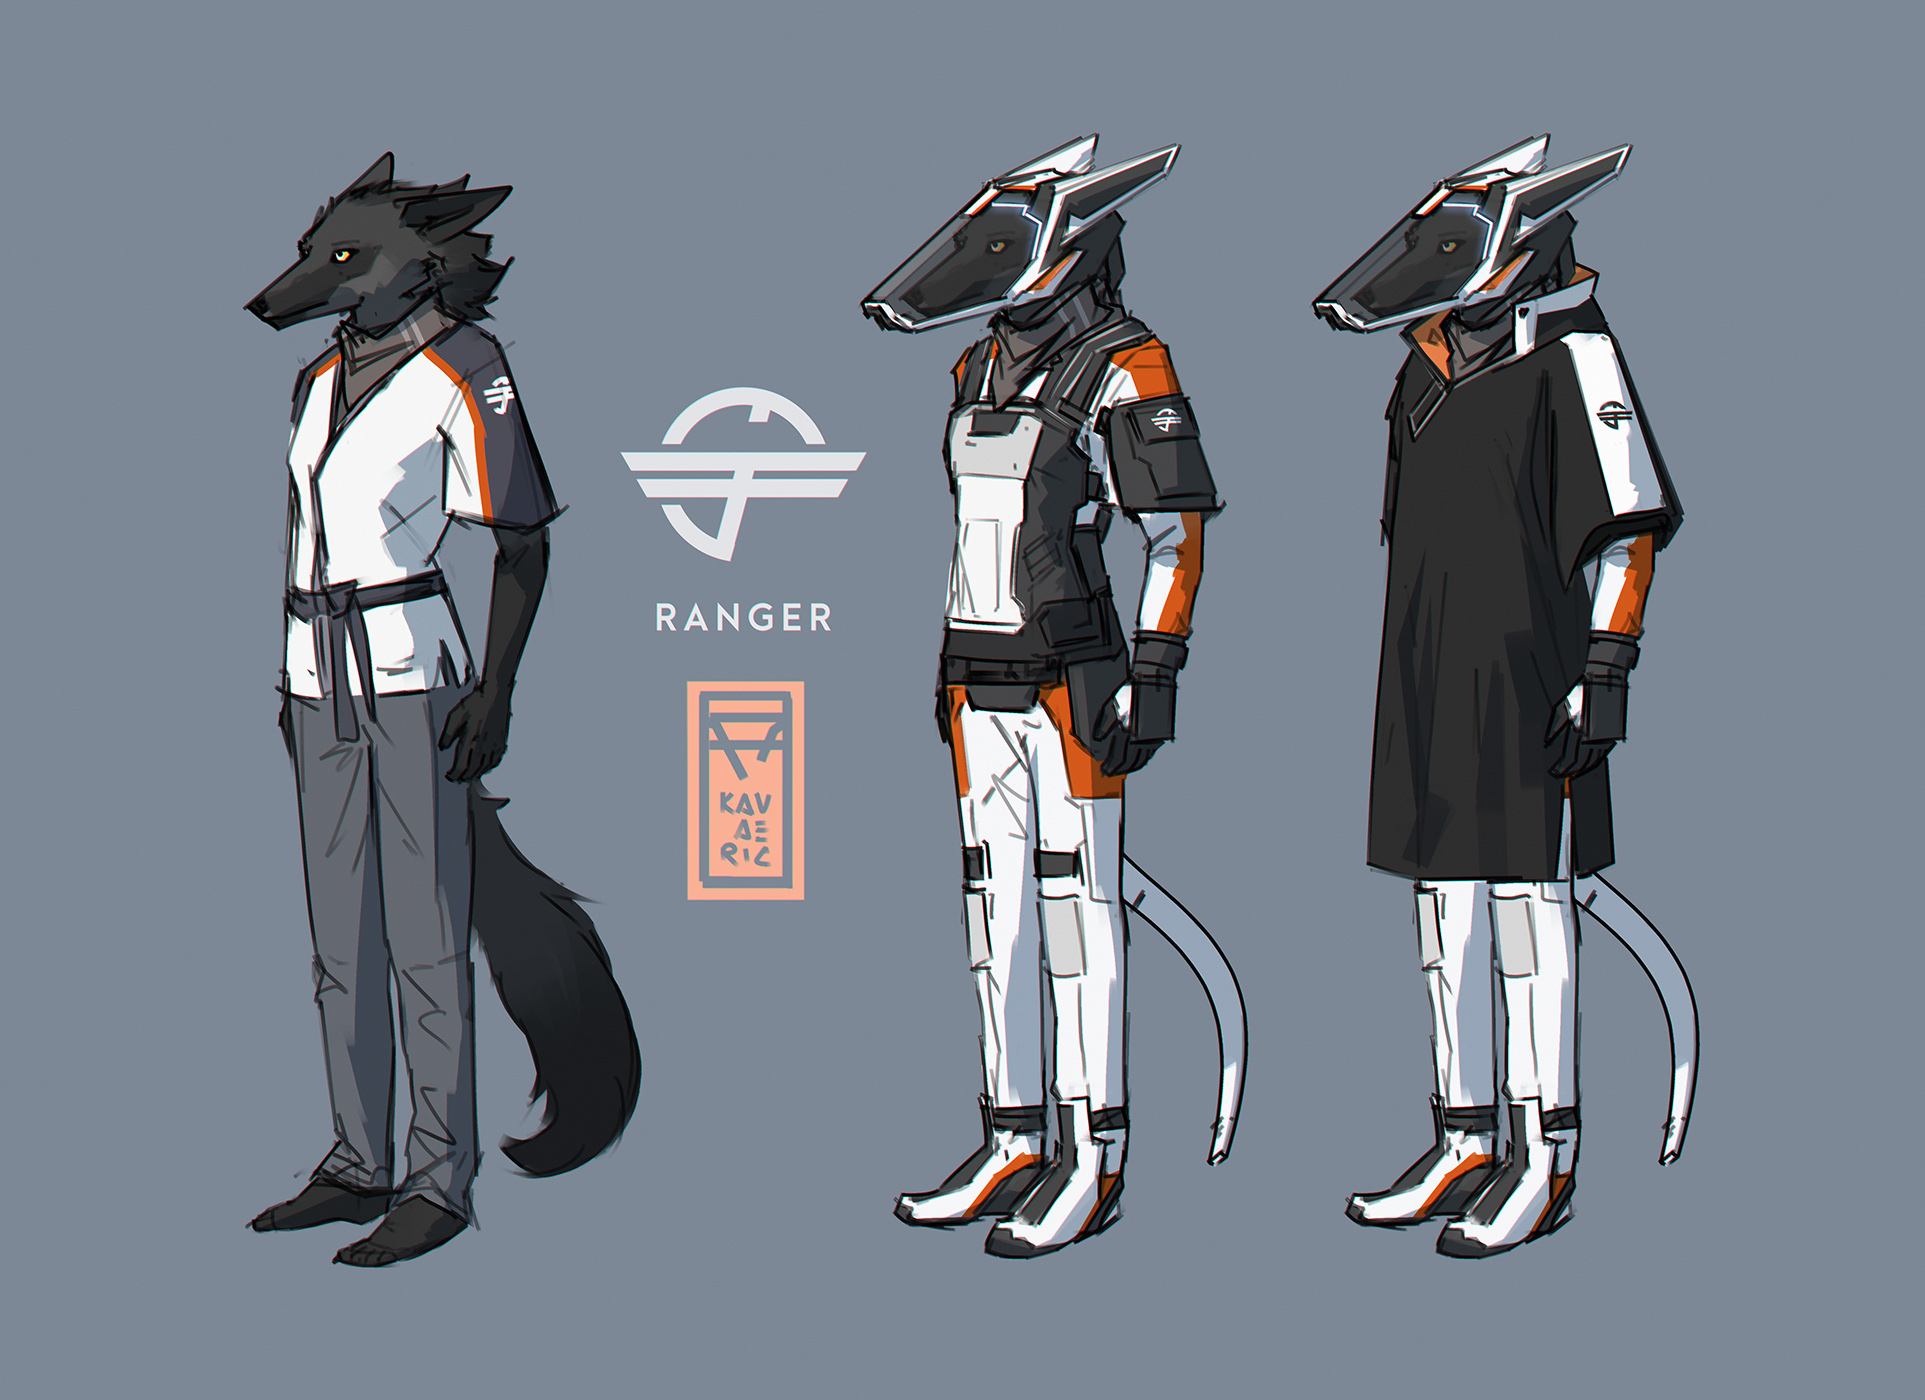 new space suit concept